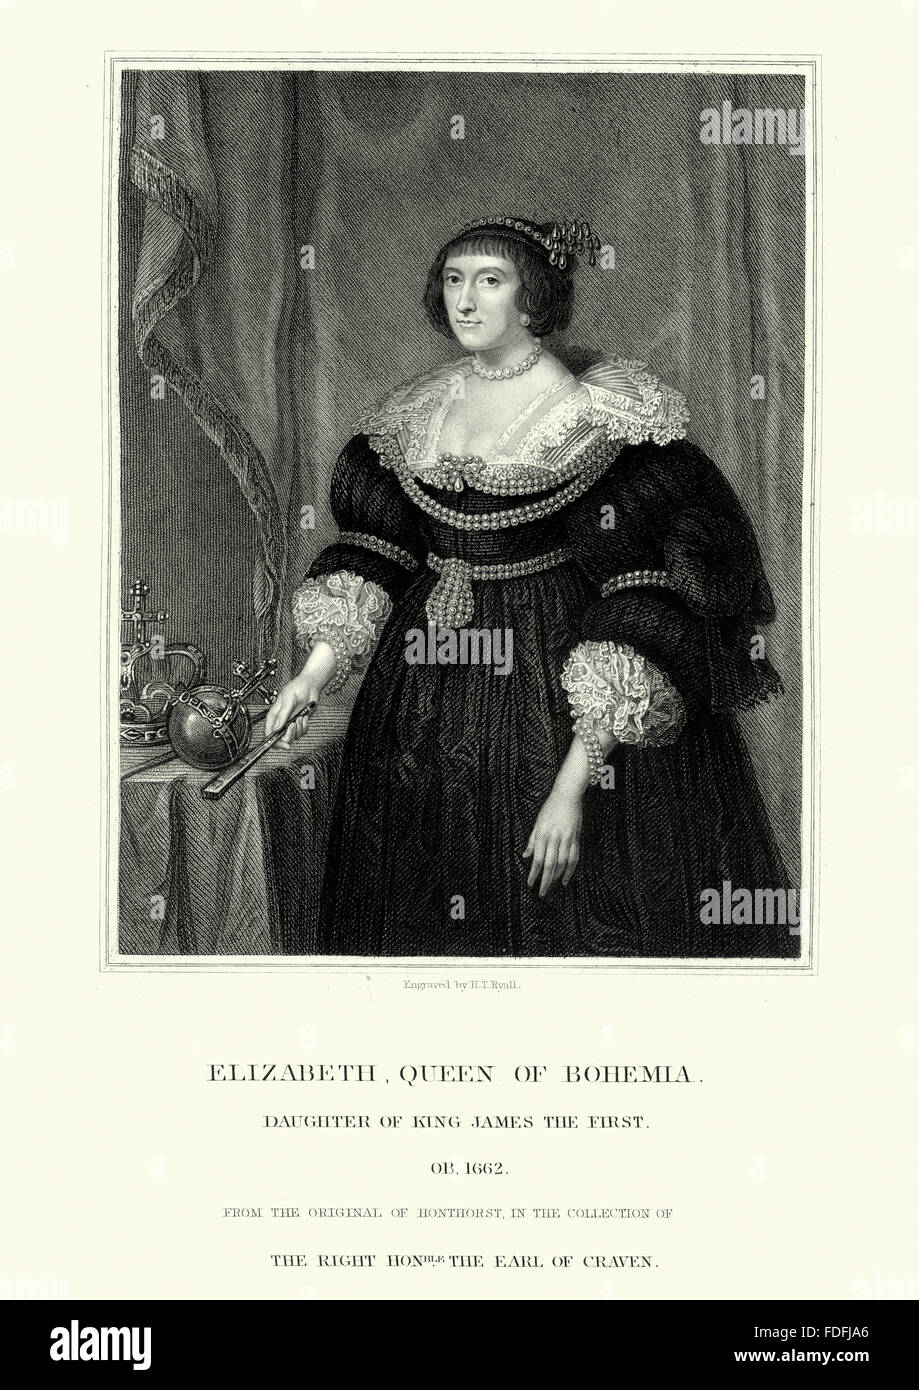 Elizabeth Stuart (19 agosto 1596 - 13 febbraio 1662) era, come la moglie di Federico V Elettore Palatino, Electress Palatino, e Foto Stock